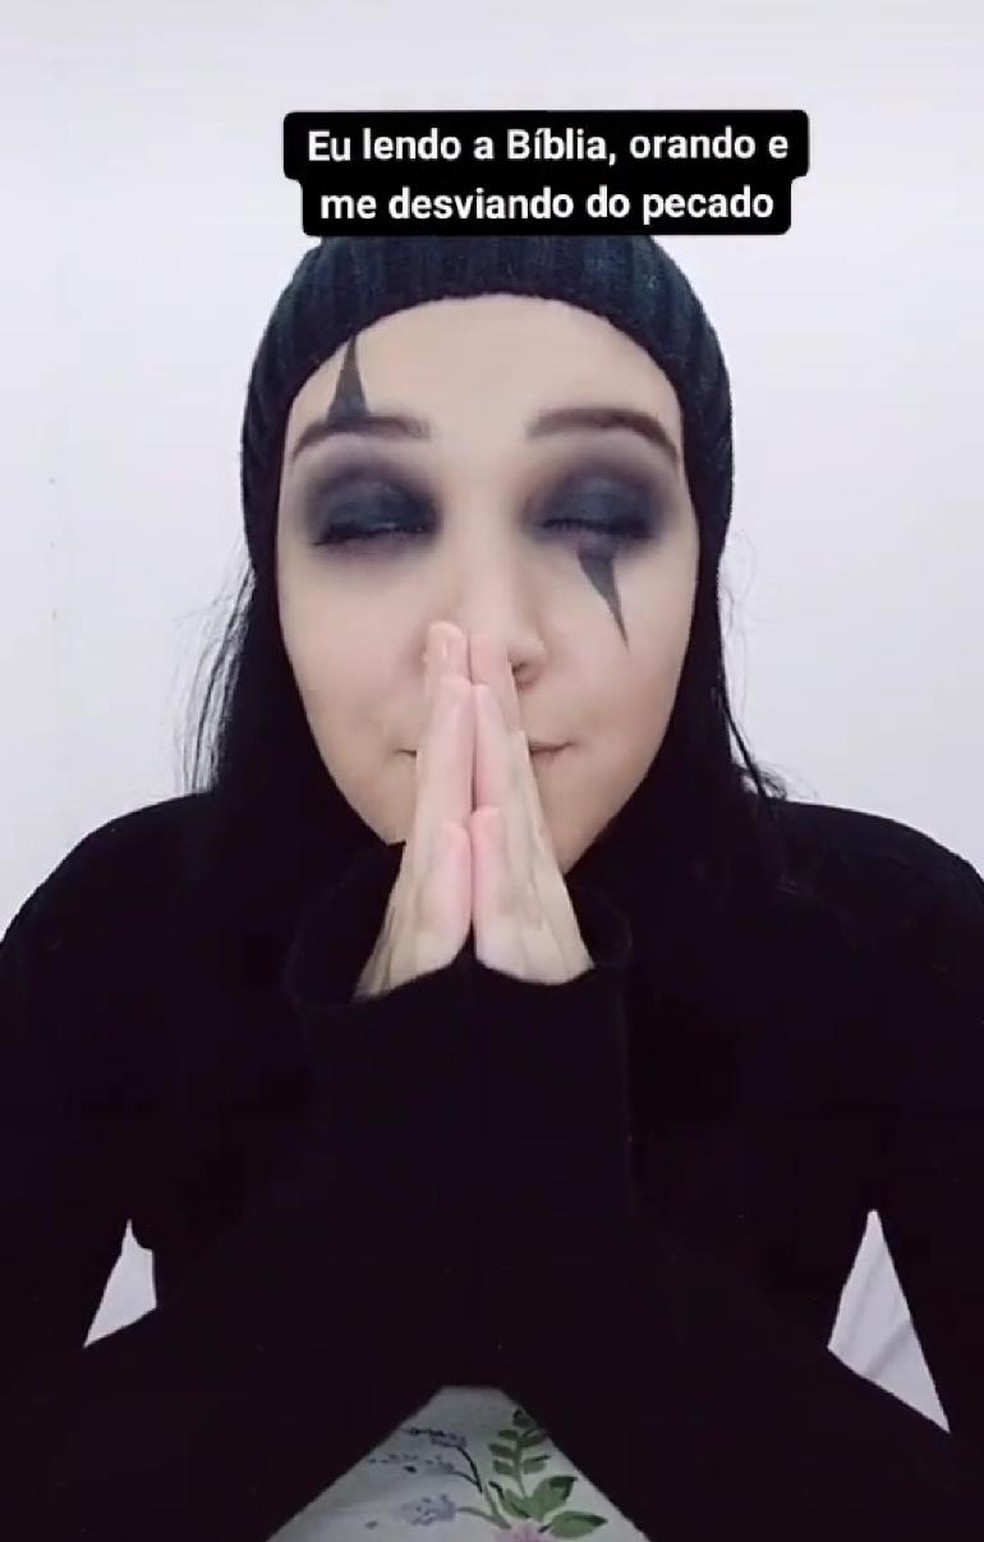 Evy posta vídeos religiosos com maquiagem gótica no TikTok — Foto: Reprodução/TikTok